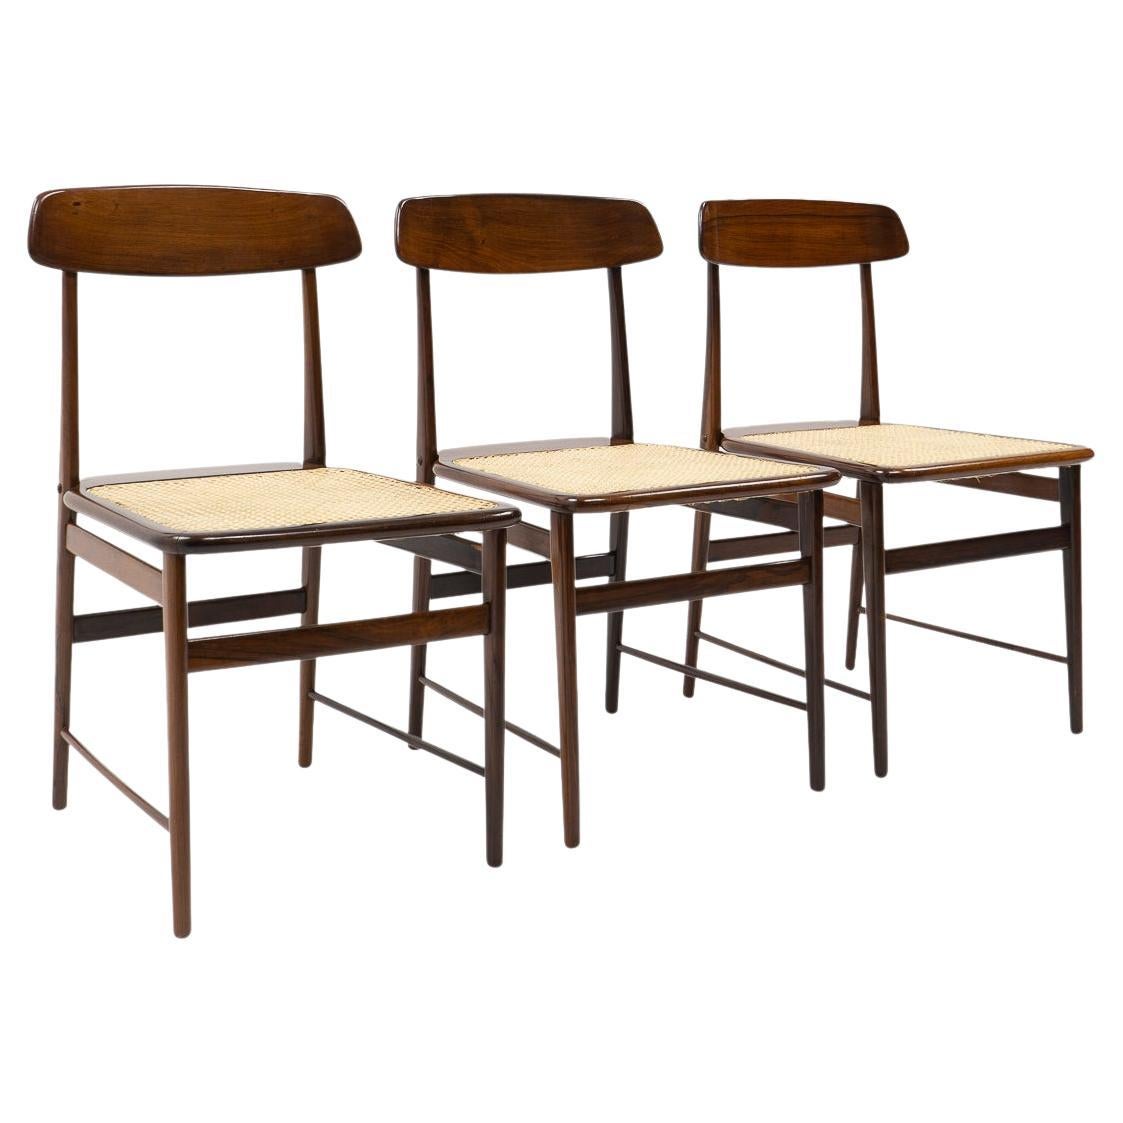 Original-Design Sergio Rodrigues, Lucio-Stühle für OCA Brasilien, 1950er Jahre